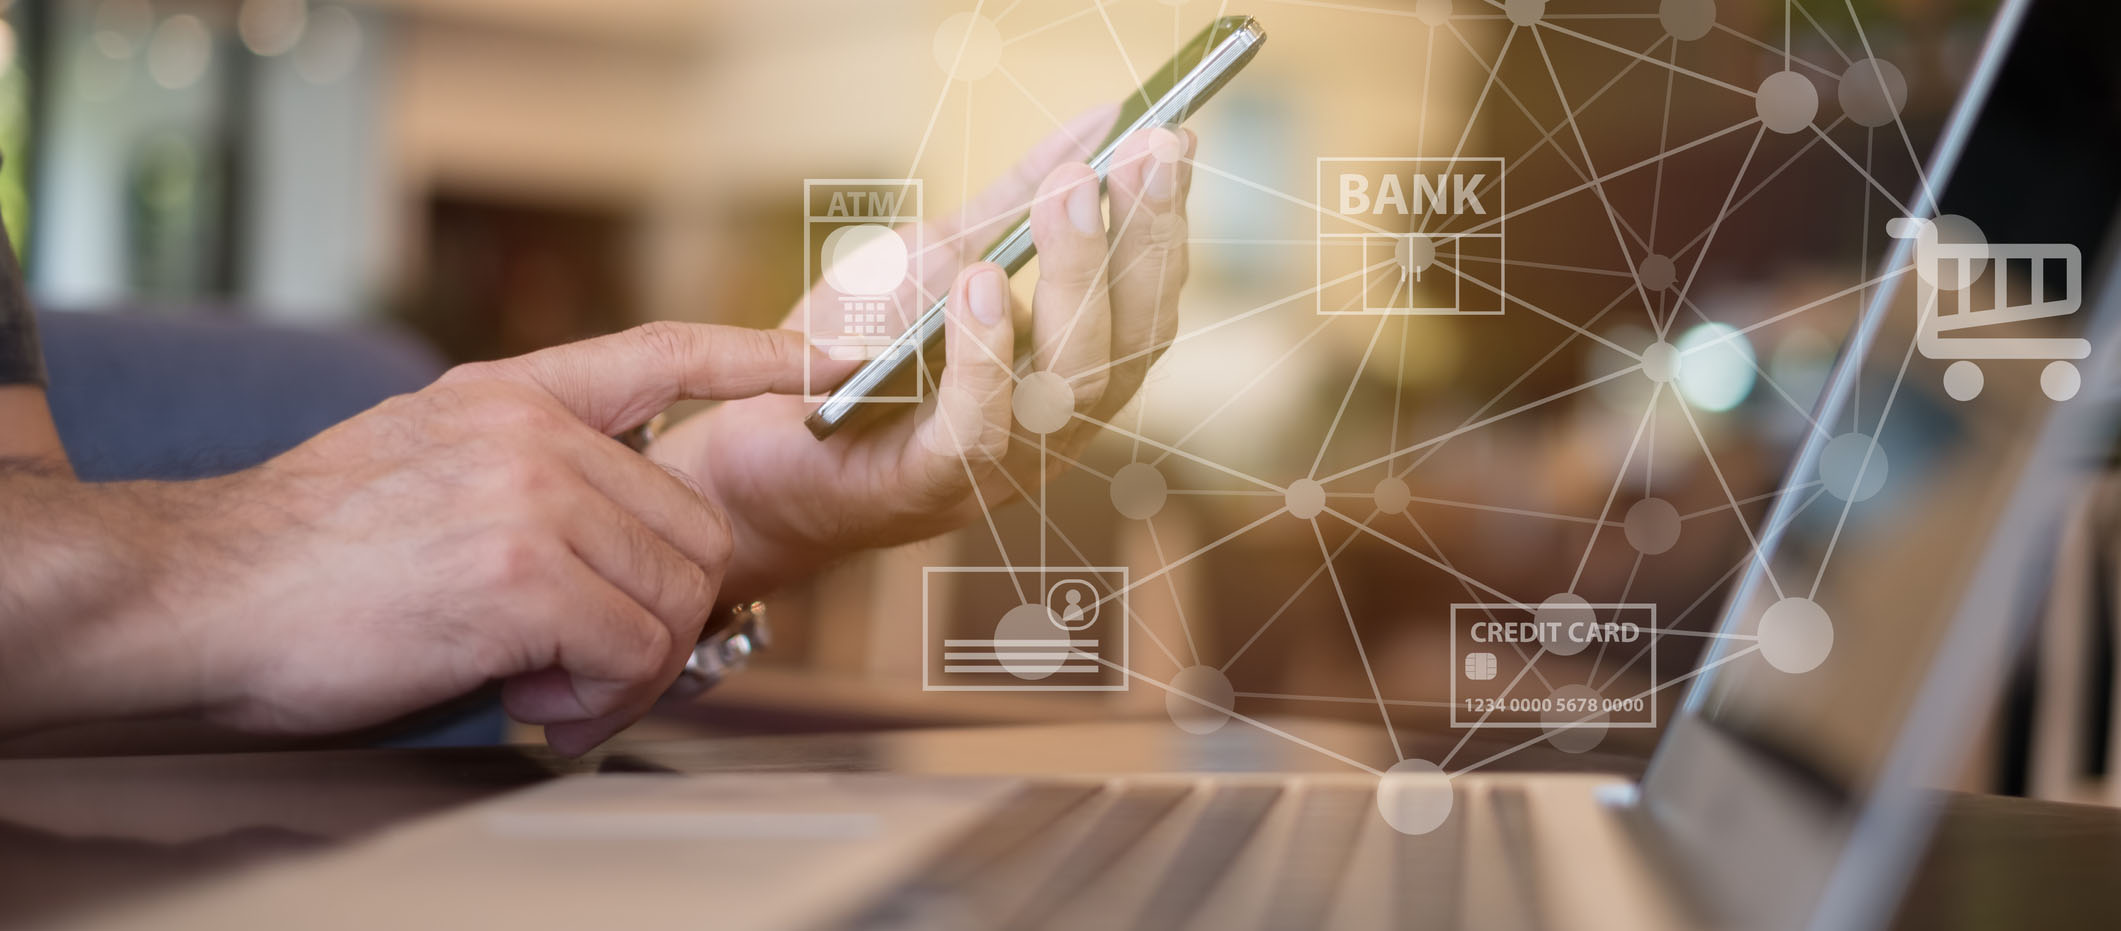 Extractos bancarios: ¿Qué son y cómo las APIs ayudan a integrarlos?